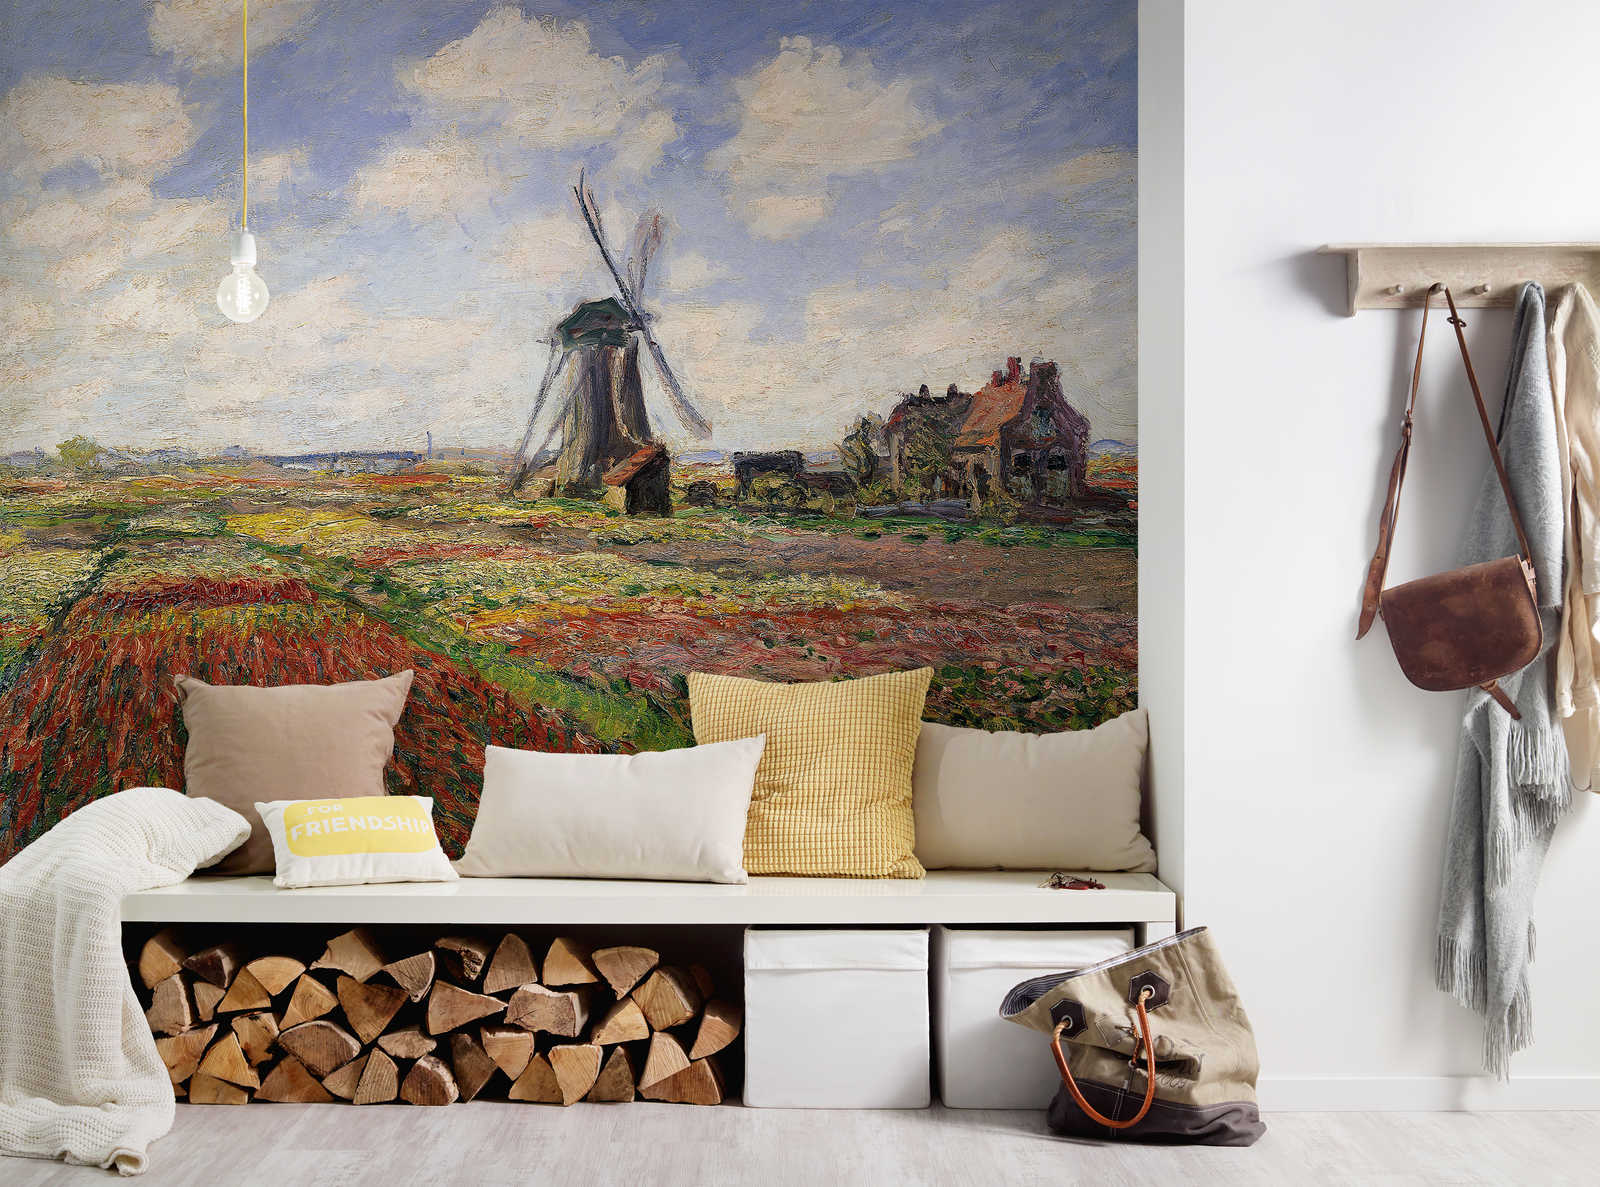             Papier peint panoramique "Champs de tulipes avec le moulin à vent de Rijnsburg" de Claude Monet
        